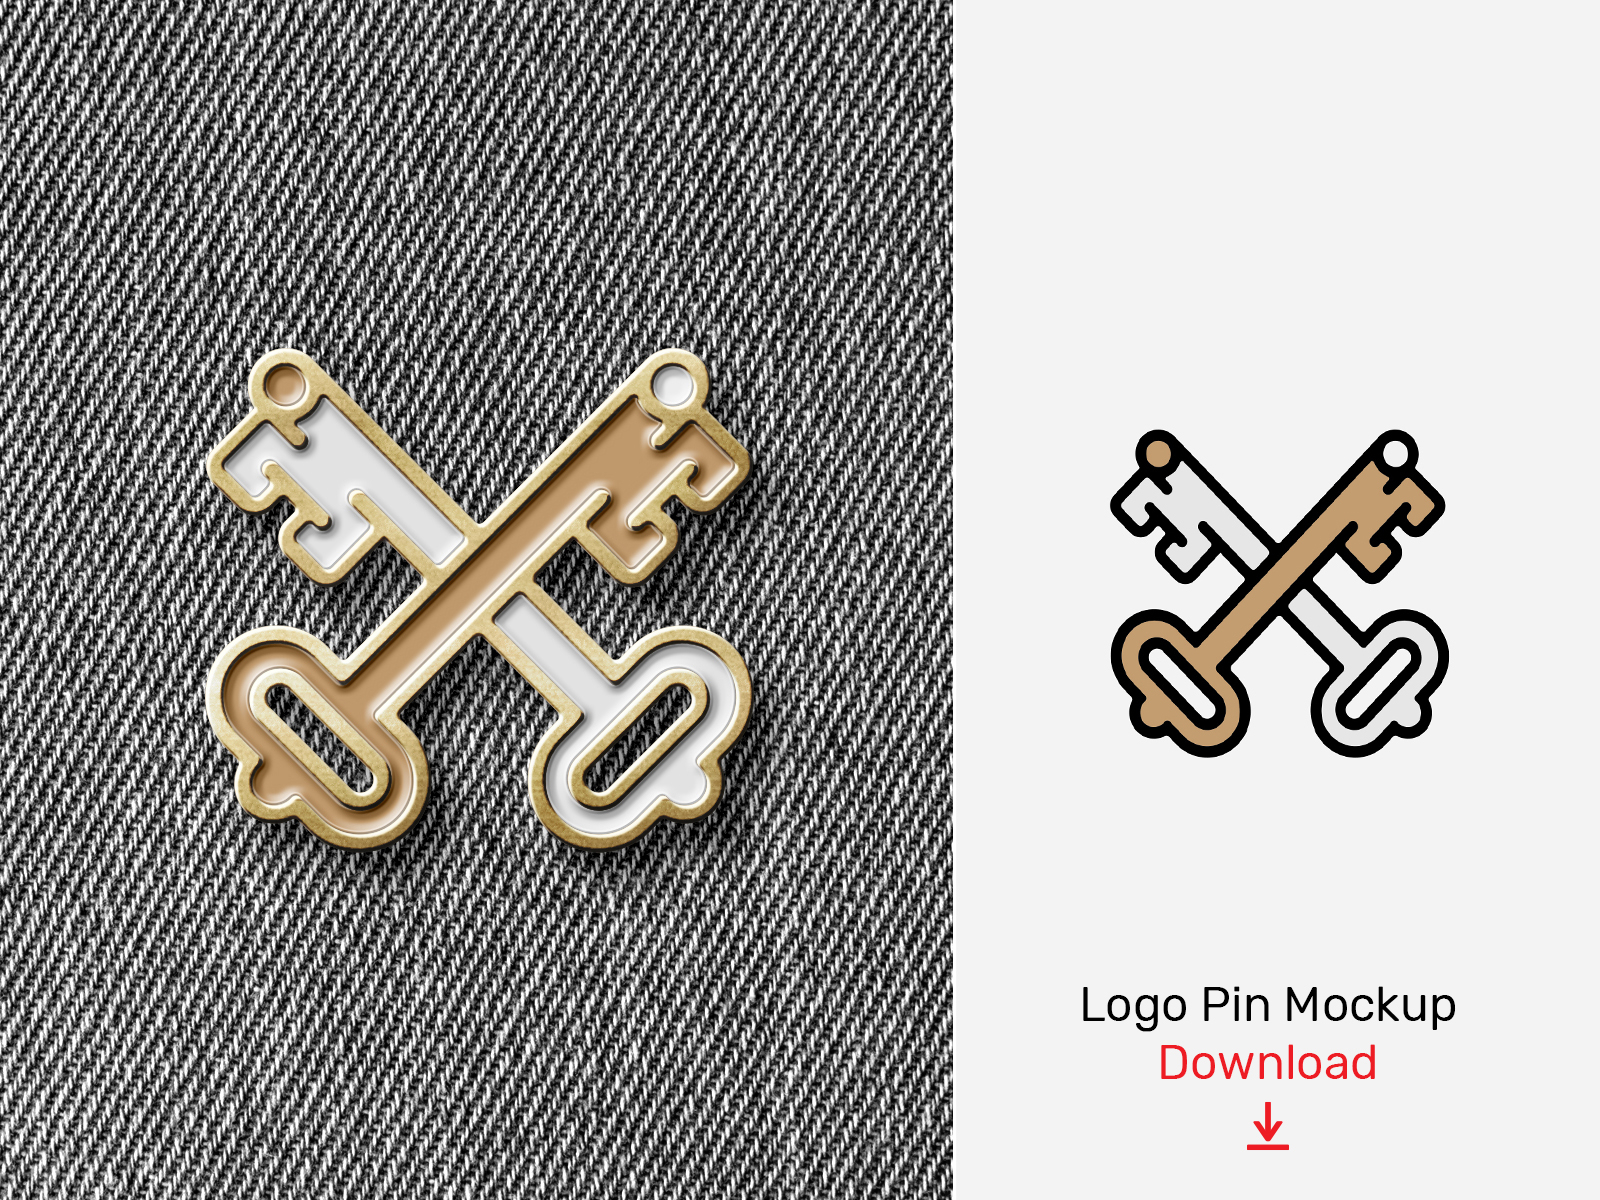 logo enamel pin mockup free download